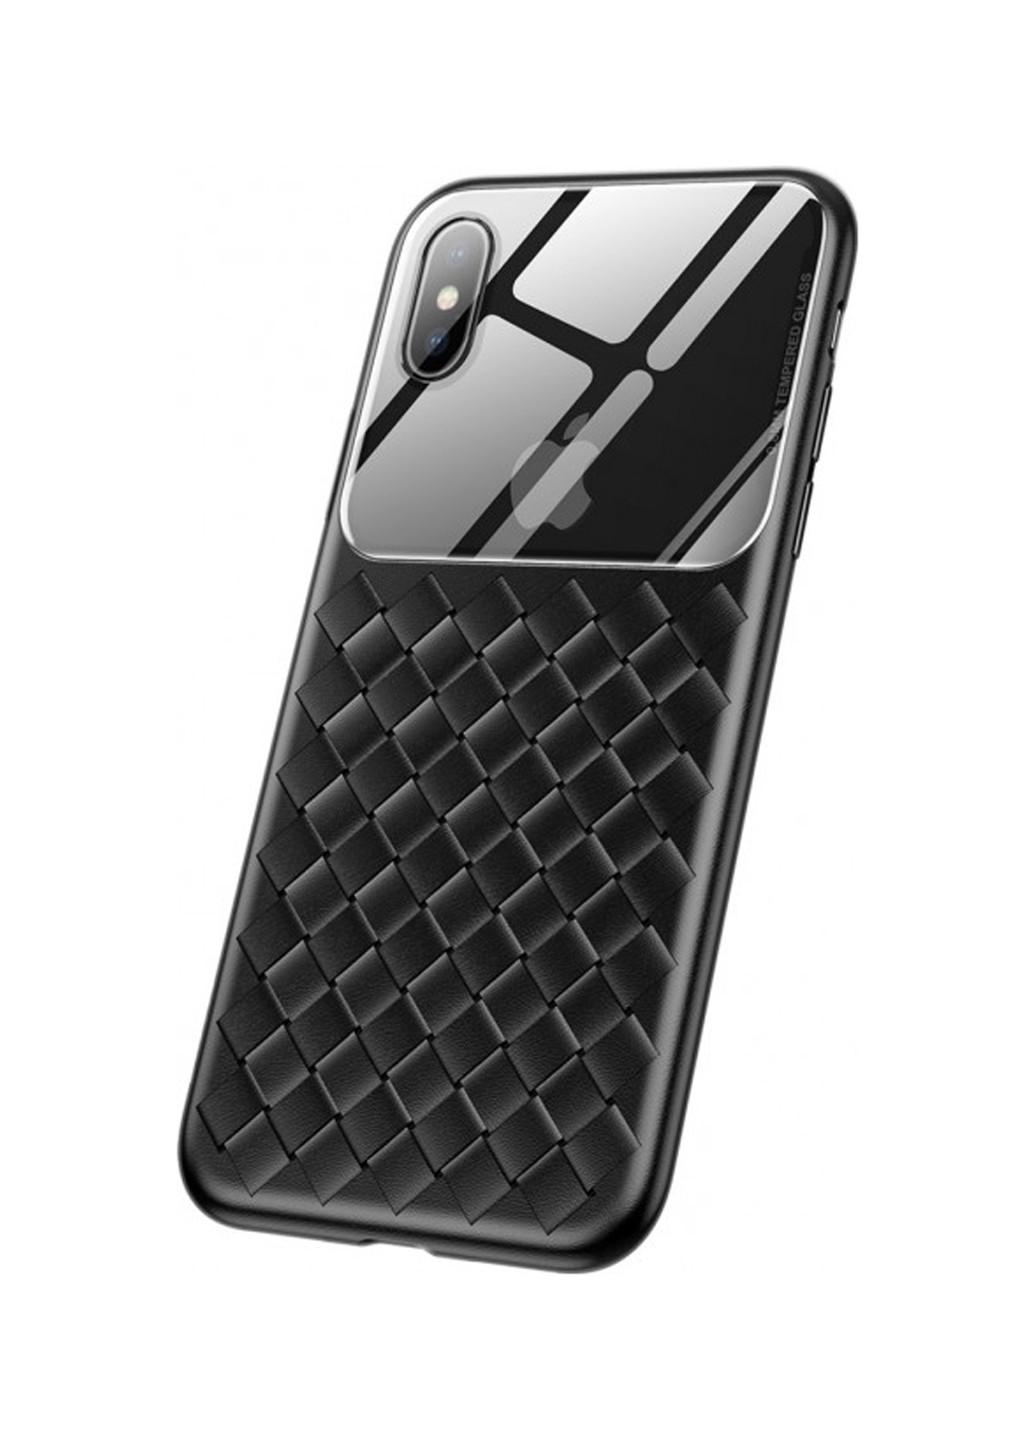 Чехол Baseus для iPhone XS Glass Weaving, Black чёрный